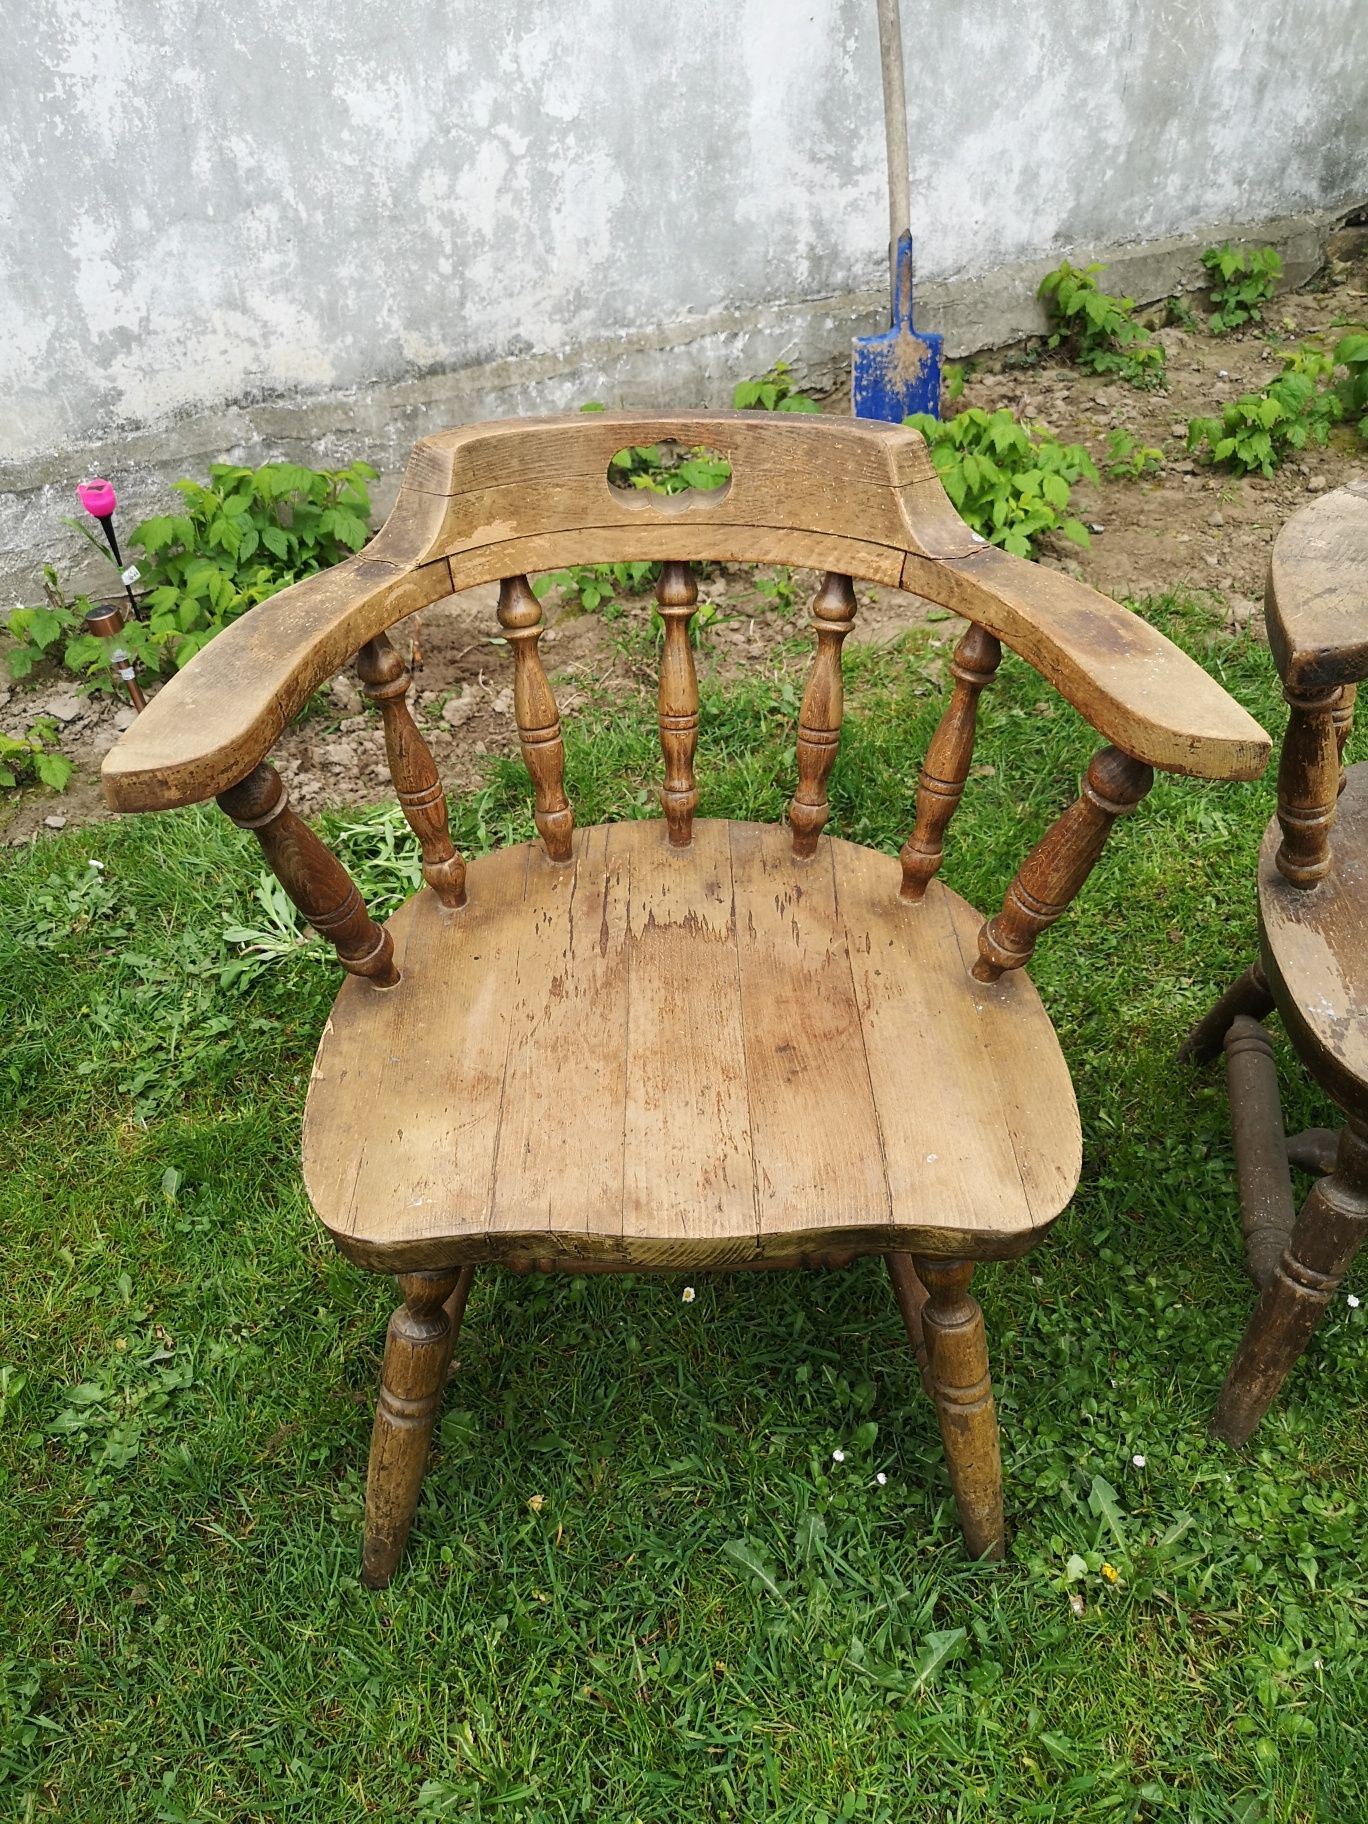 2 krzesła bukowe do renowacji